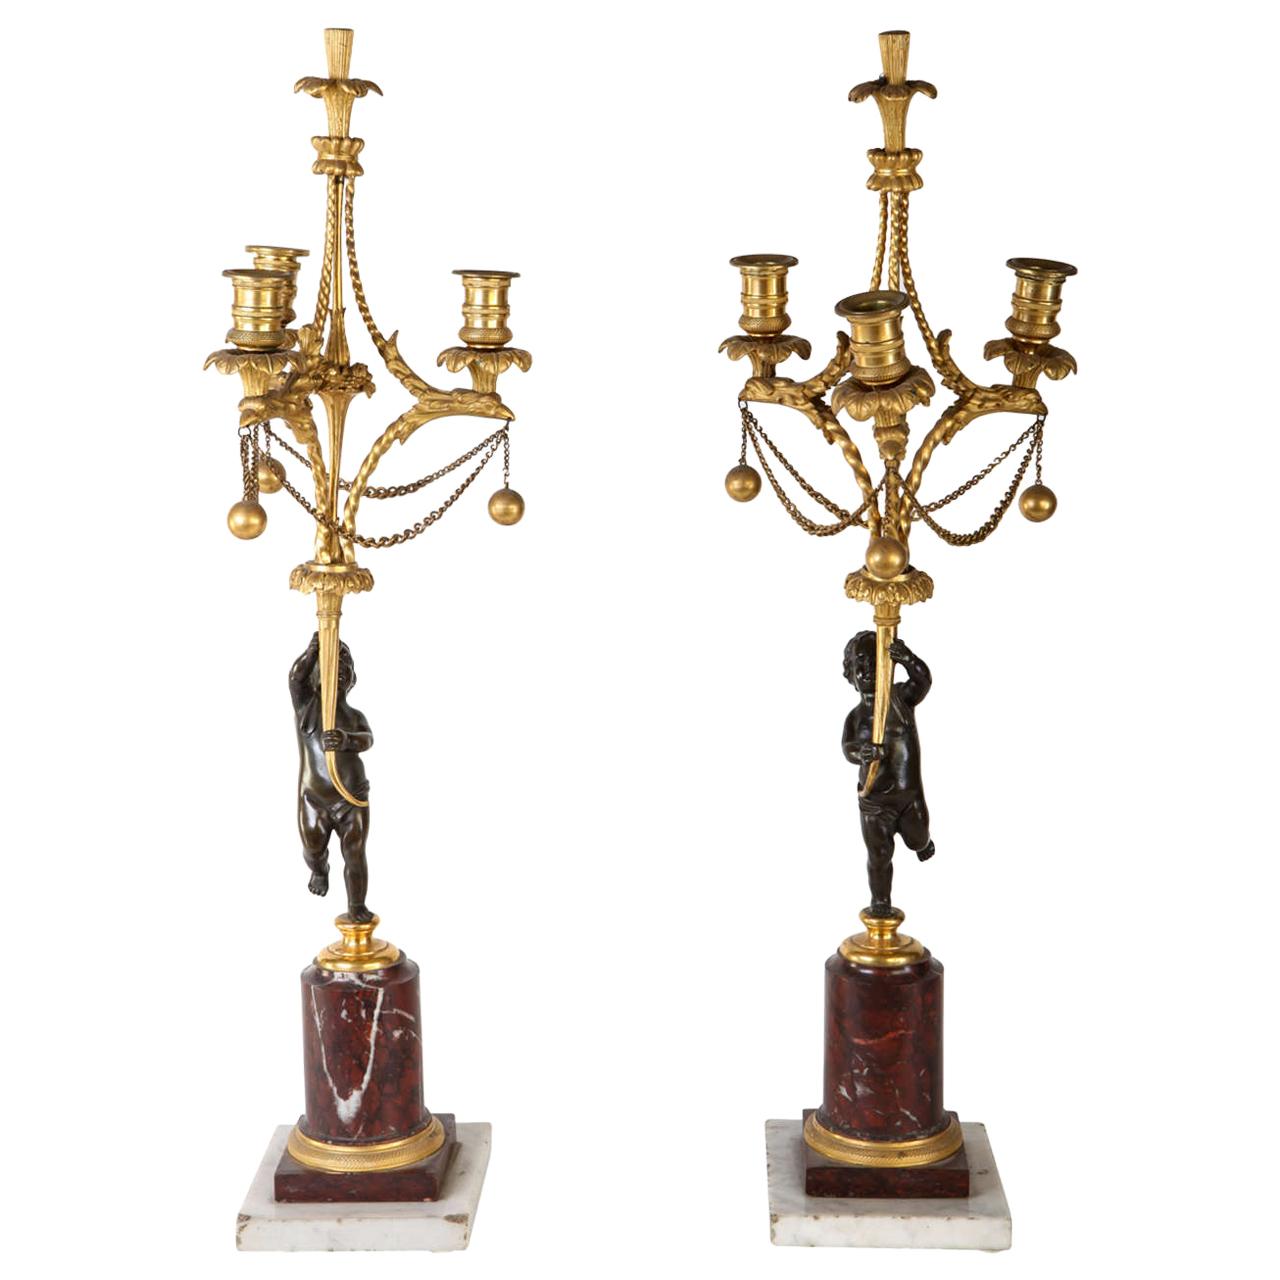 Paire de chandeliers français du 18ème siècle en bronze et bronze doré